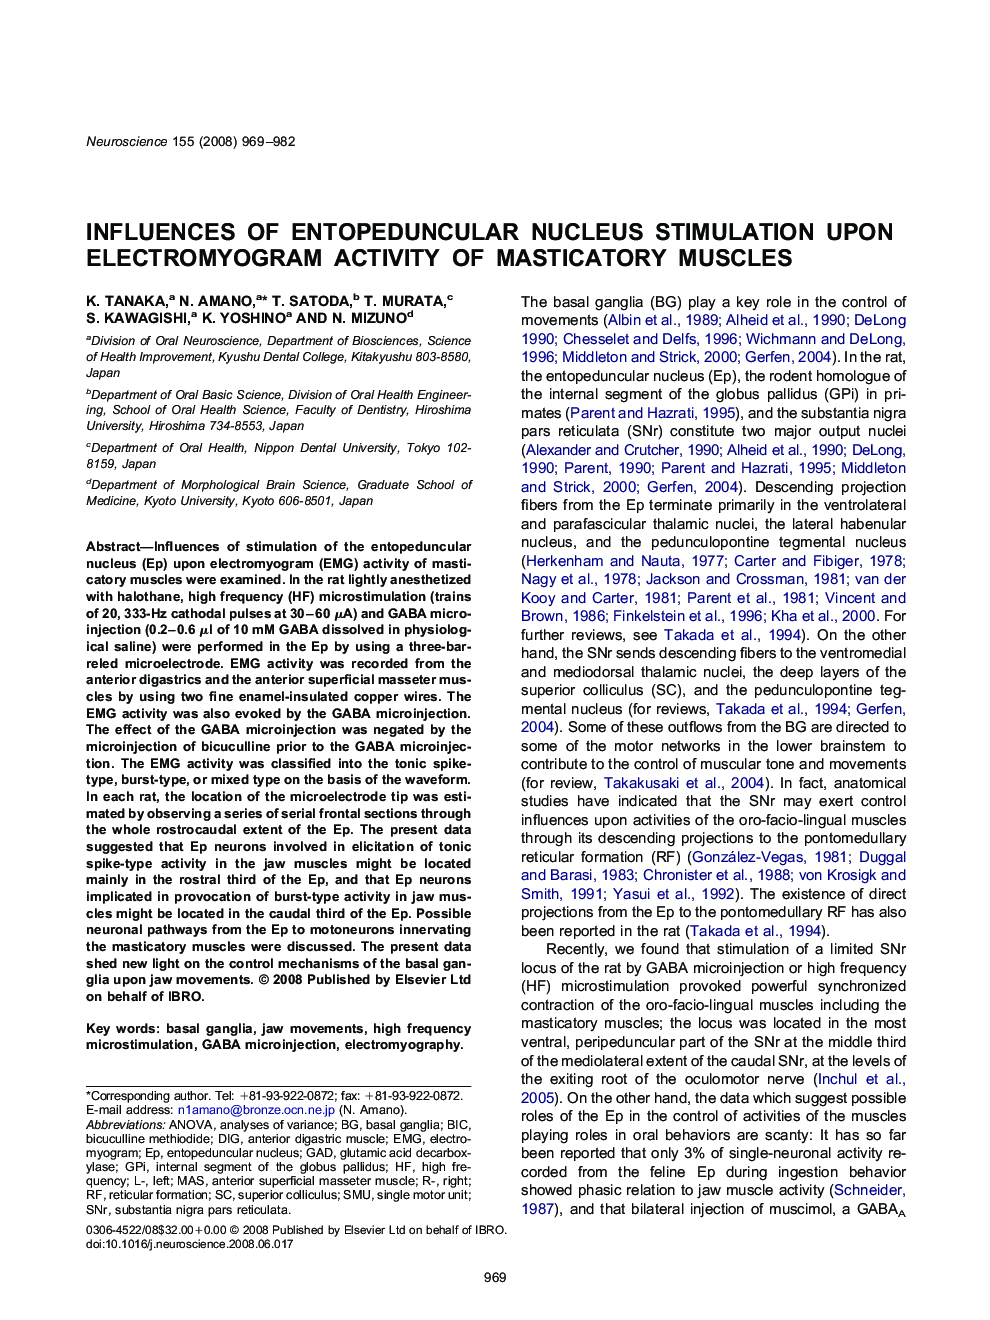 Influences of entopeduncular nucleus stimulation upon electromyogram activity of masticatory muscles